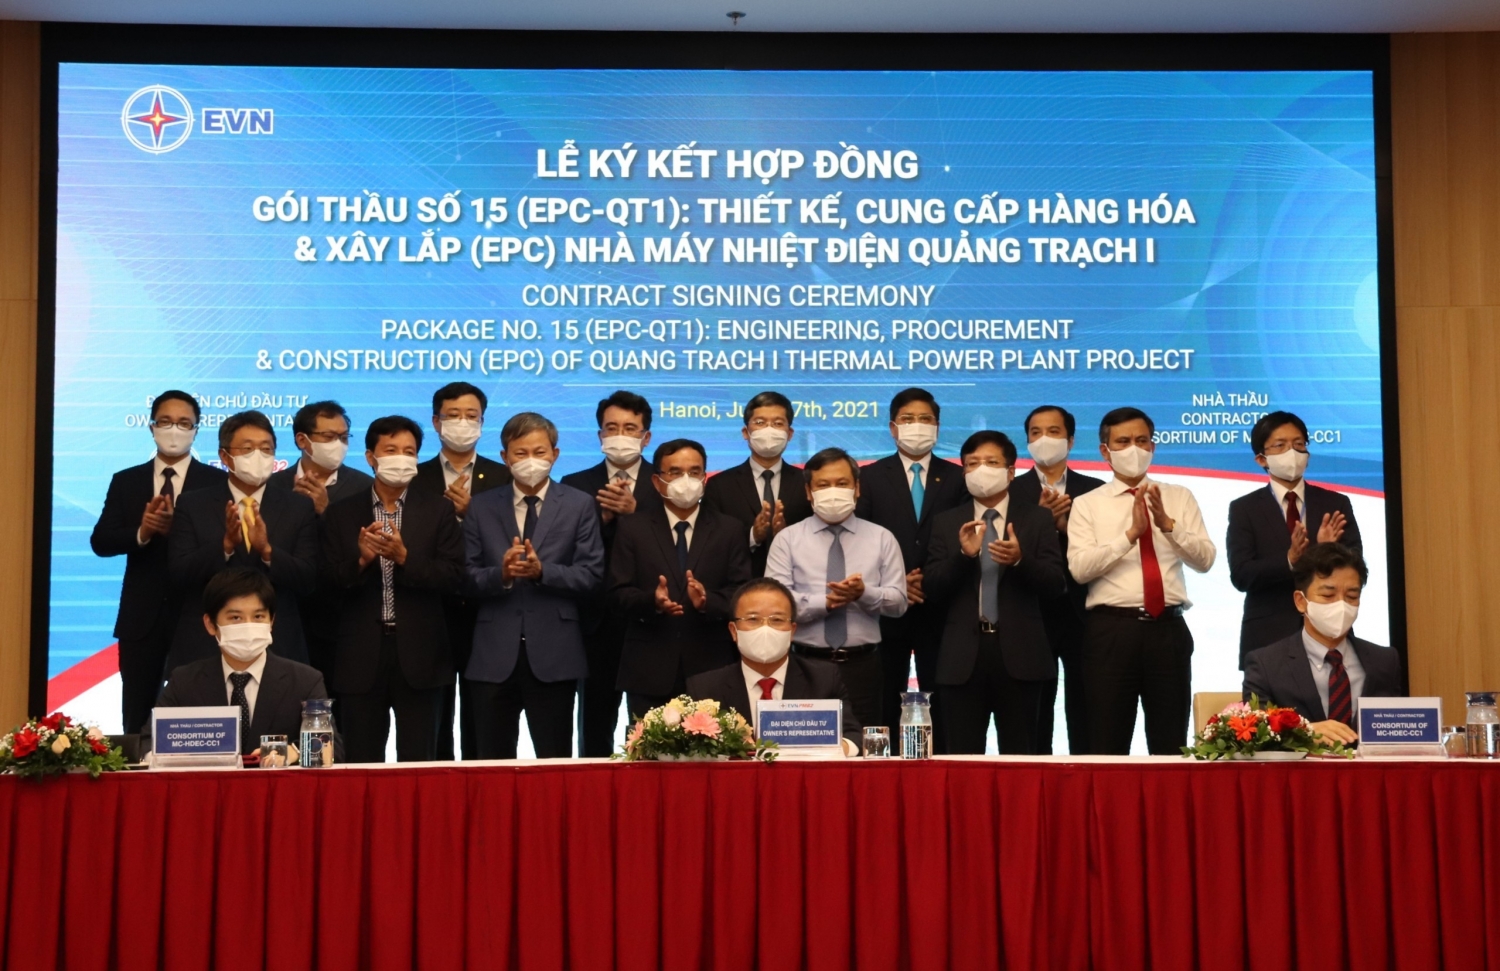 Gói thầu trị giá hơn 30.000 tỷ của Dự án Nhiệt điện Quảng Trạch I được ký kết